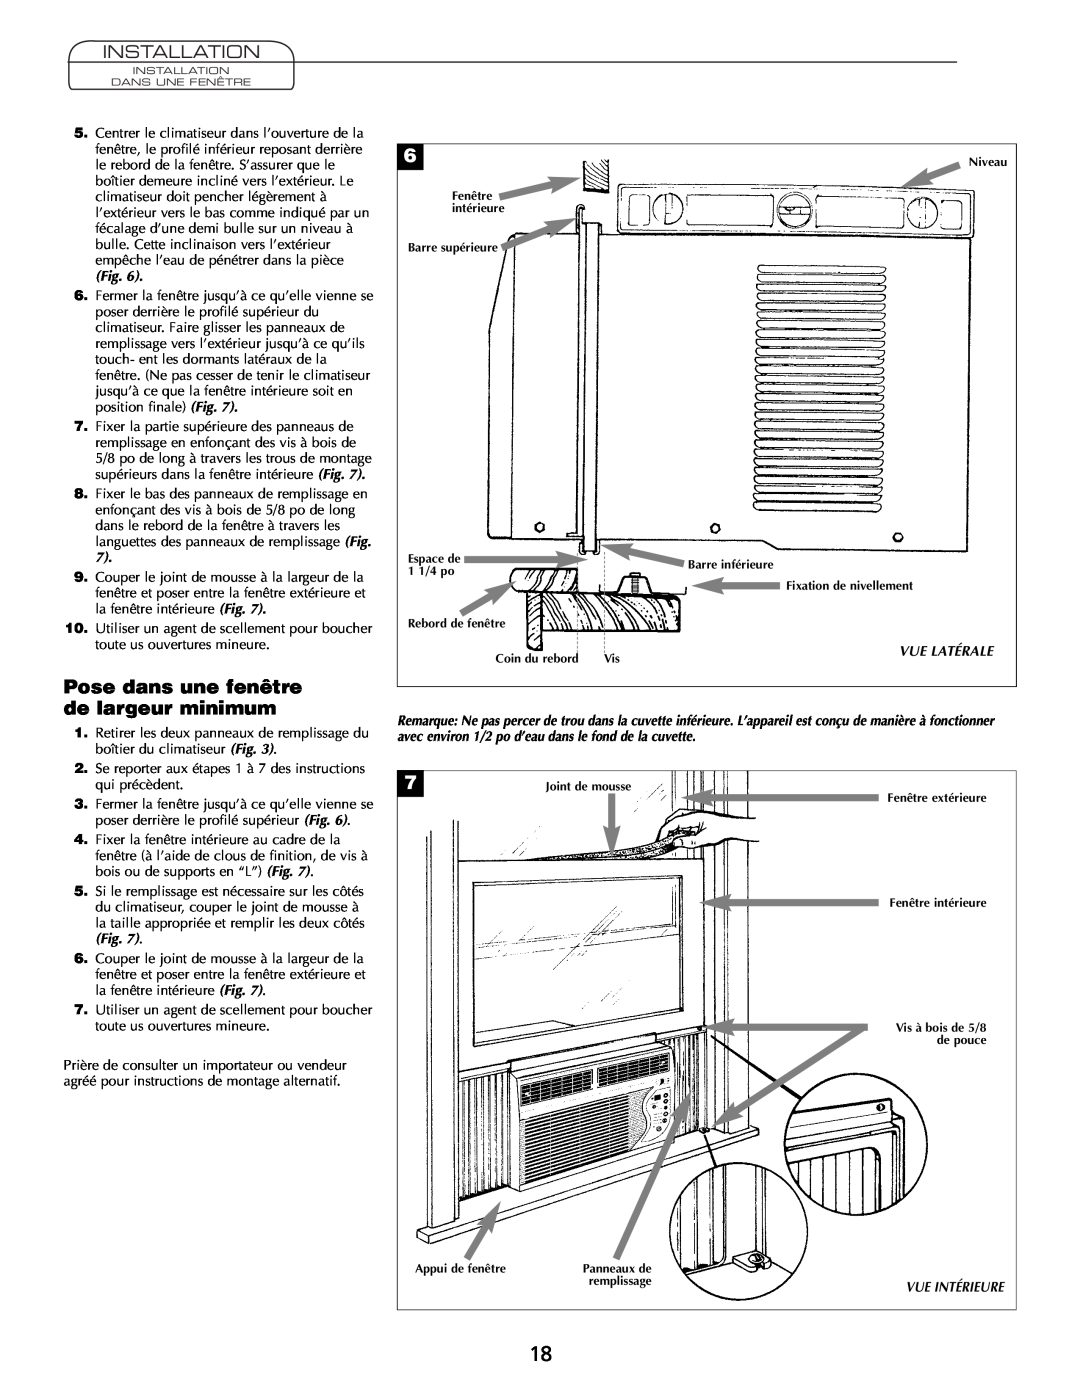 Heat Controller Comfort Air important safety instructions Pose dans une fenêtre de largeur minimum, Installation 